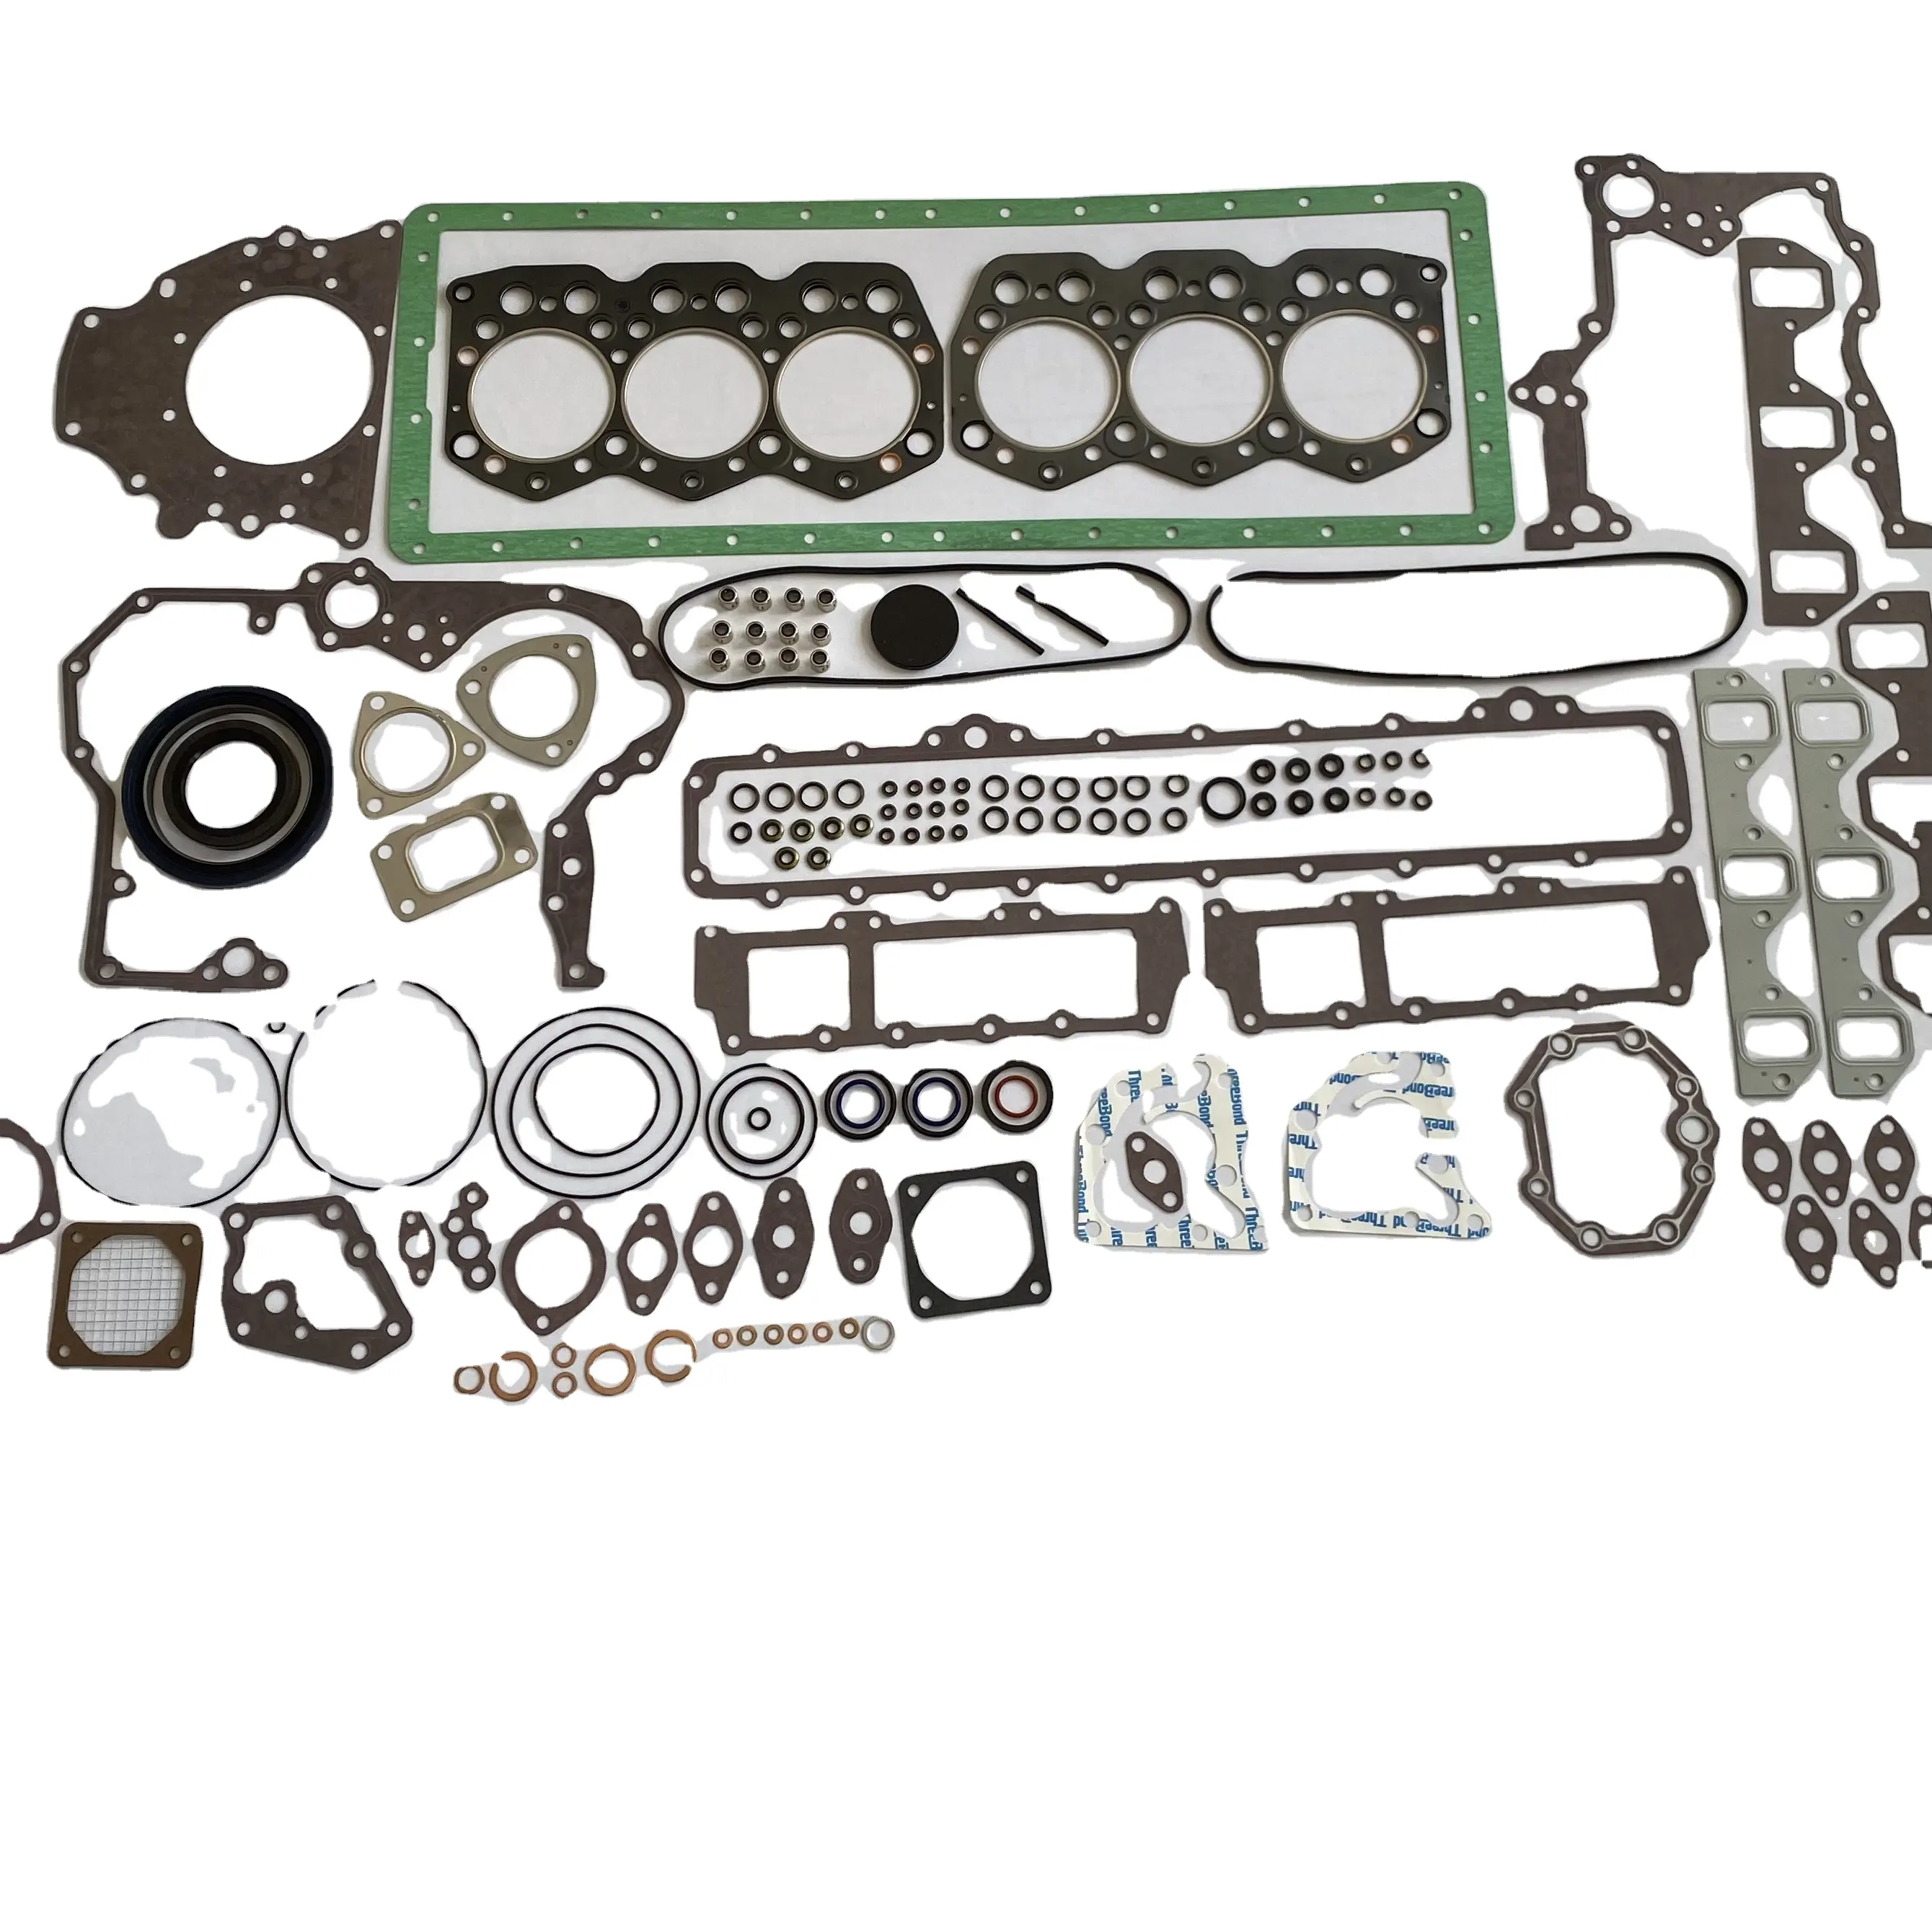 Kit Gasket Pemeriksaan Kualitas Tinggi untuk S6K 3066 S6KT Mesin Konstruksi Mesin Diesel E200B E320B 34394 Ekskavator-20011